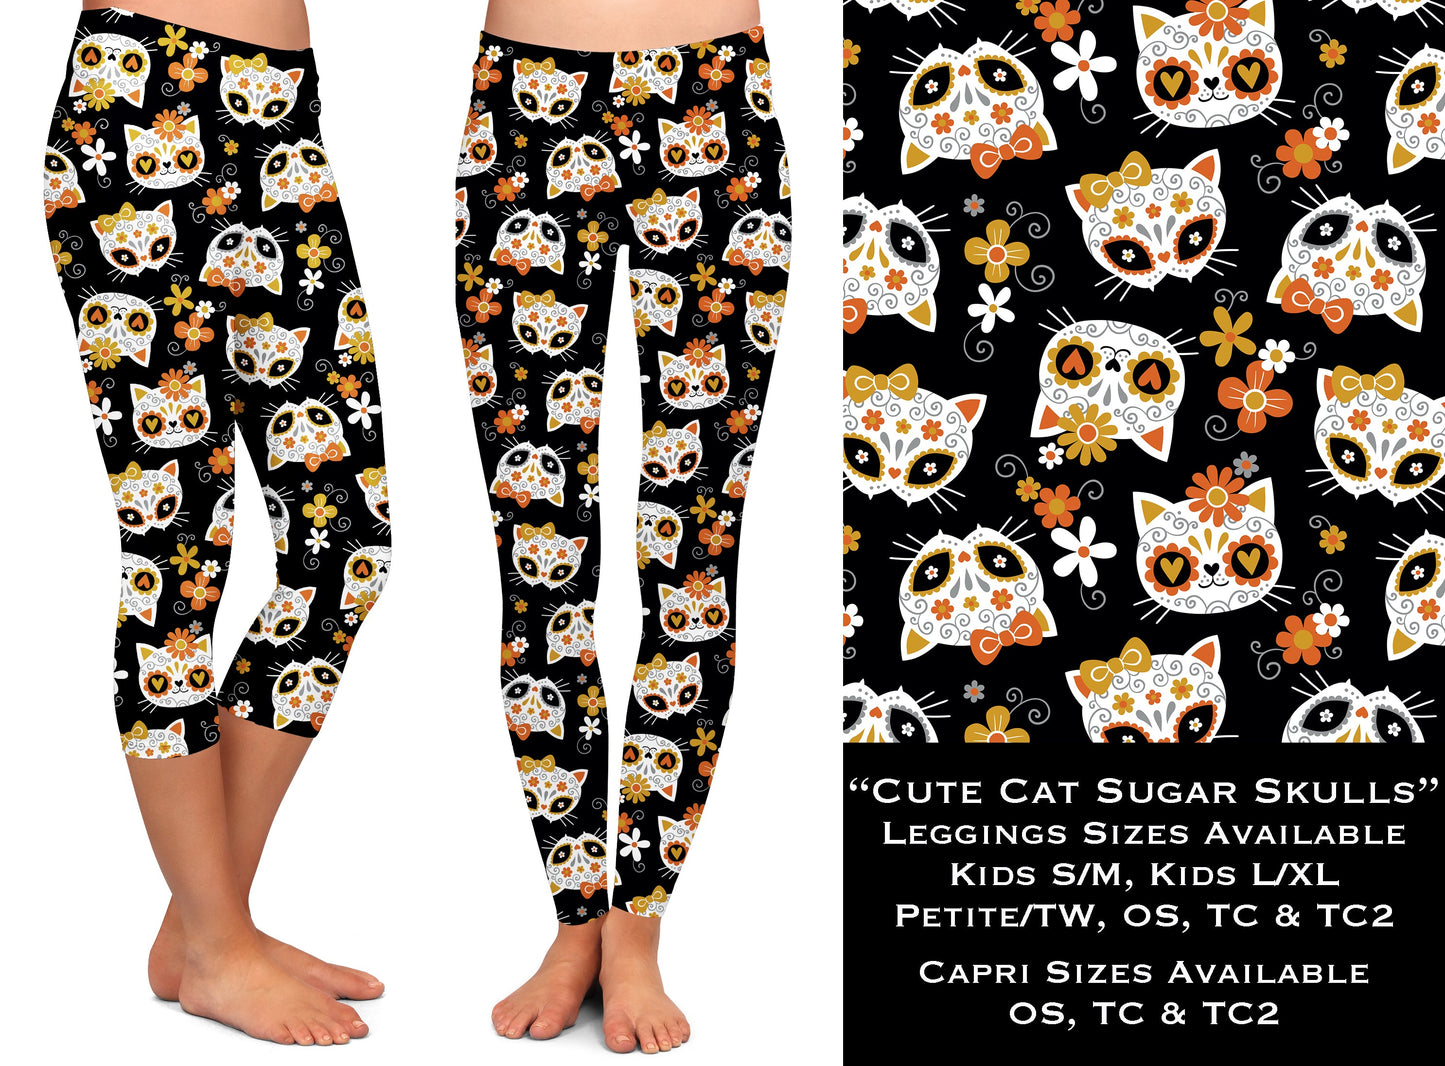 Cute Cat Sugar Skulls - Leggings & Capris